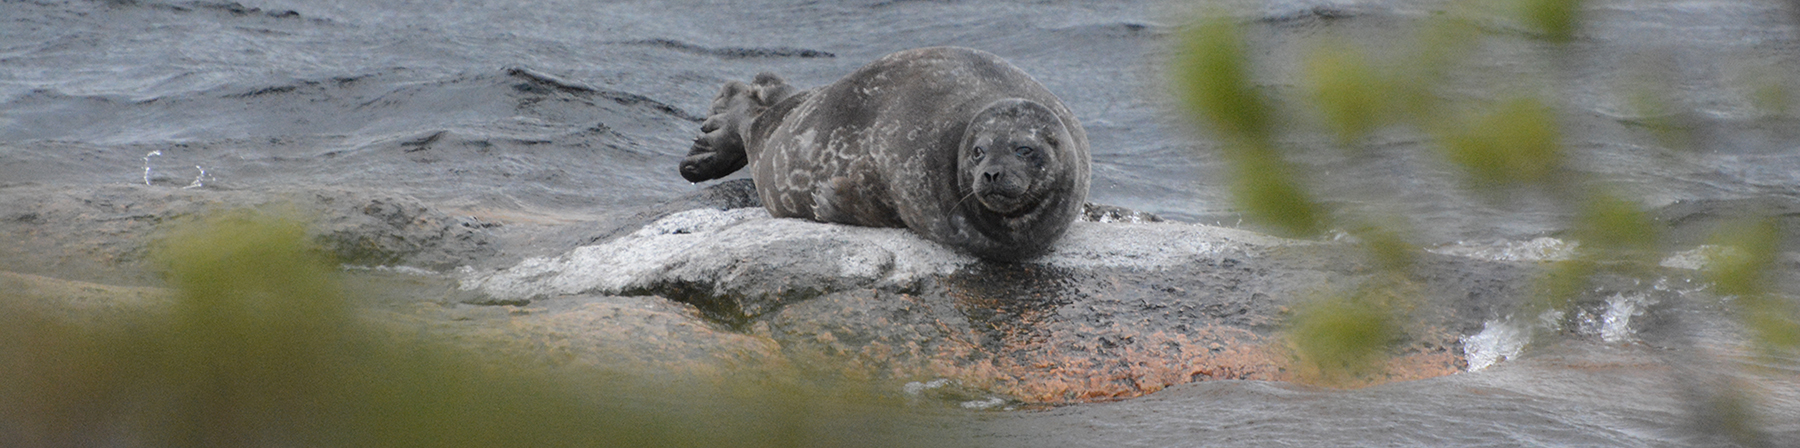 Ringed seal (Pusa hispida) is photographed by Japanese visitors, at Osaka  Aquarium Kaiyukan, Osaka, Stock Photo, Picture And Rights Managed Image.  Pic. IBR-5031667 | agefotostock